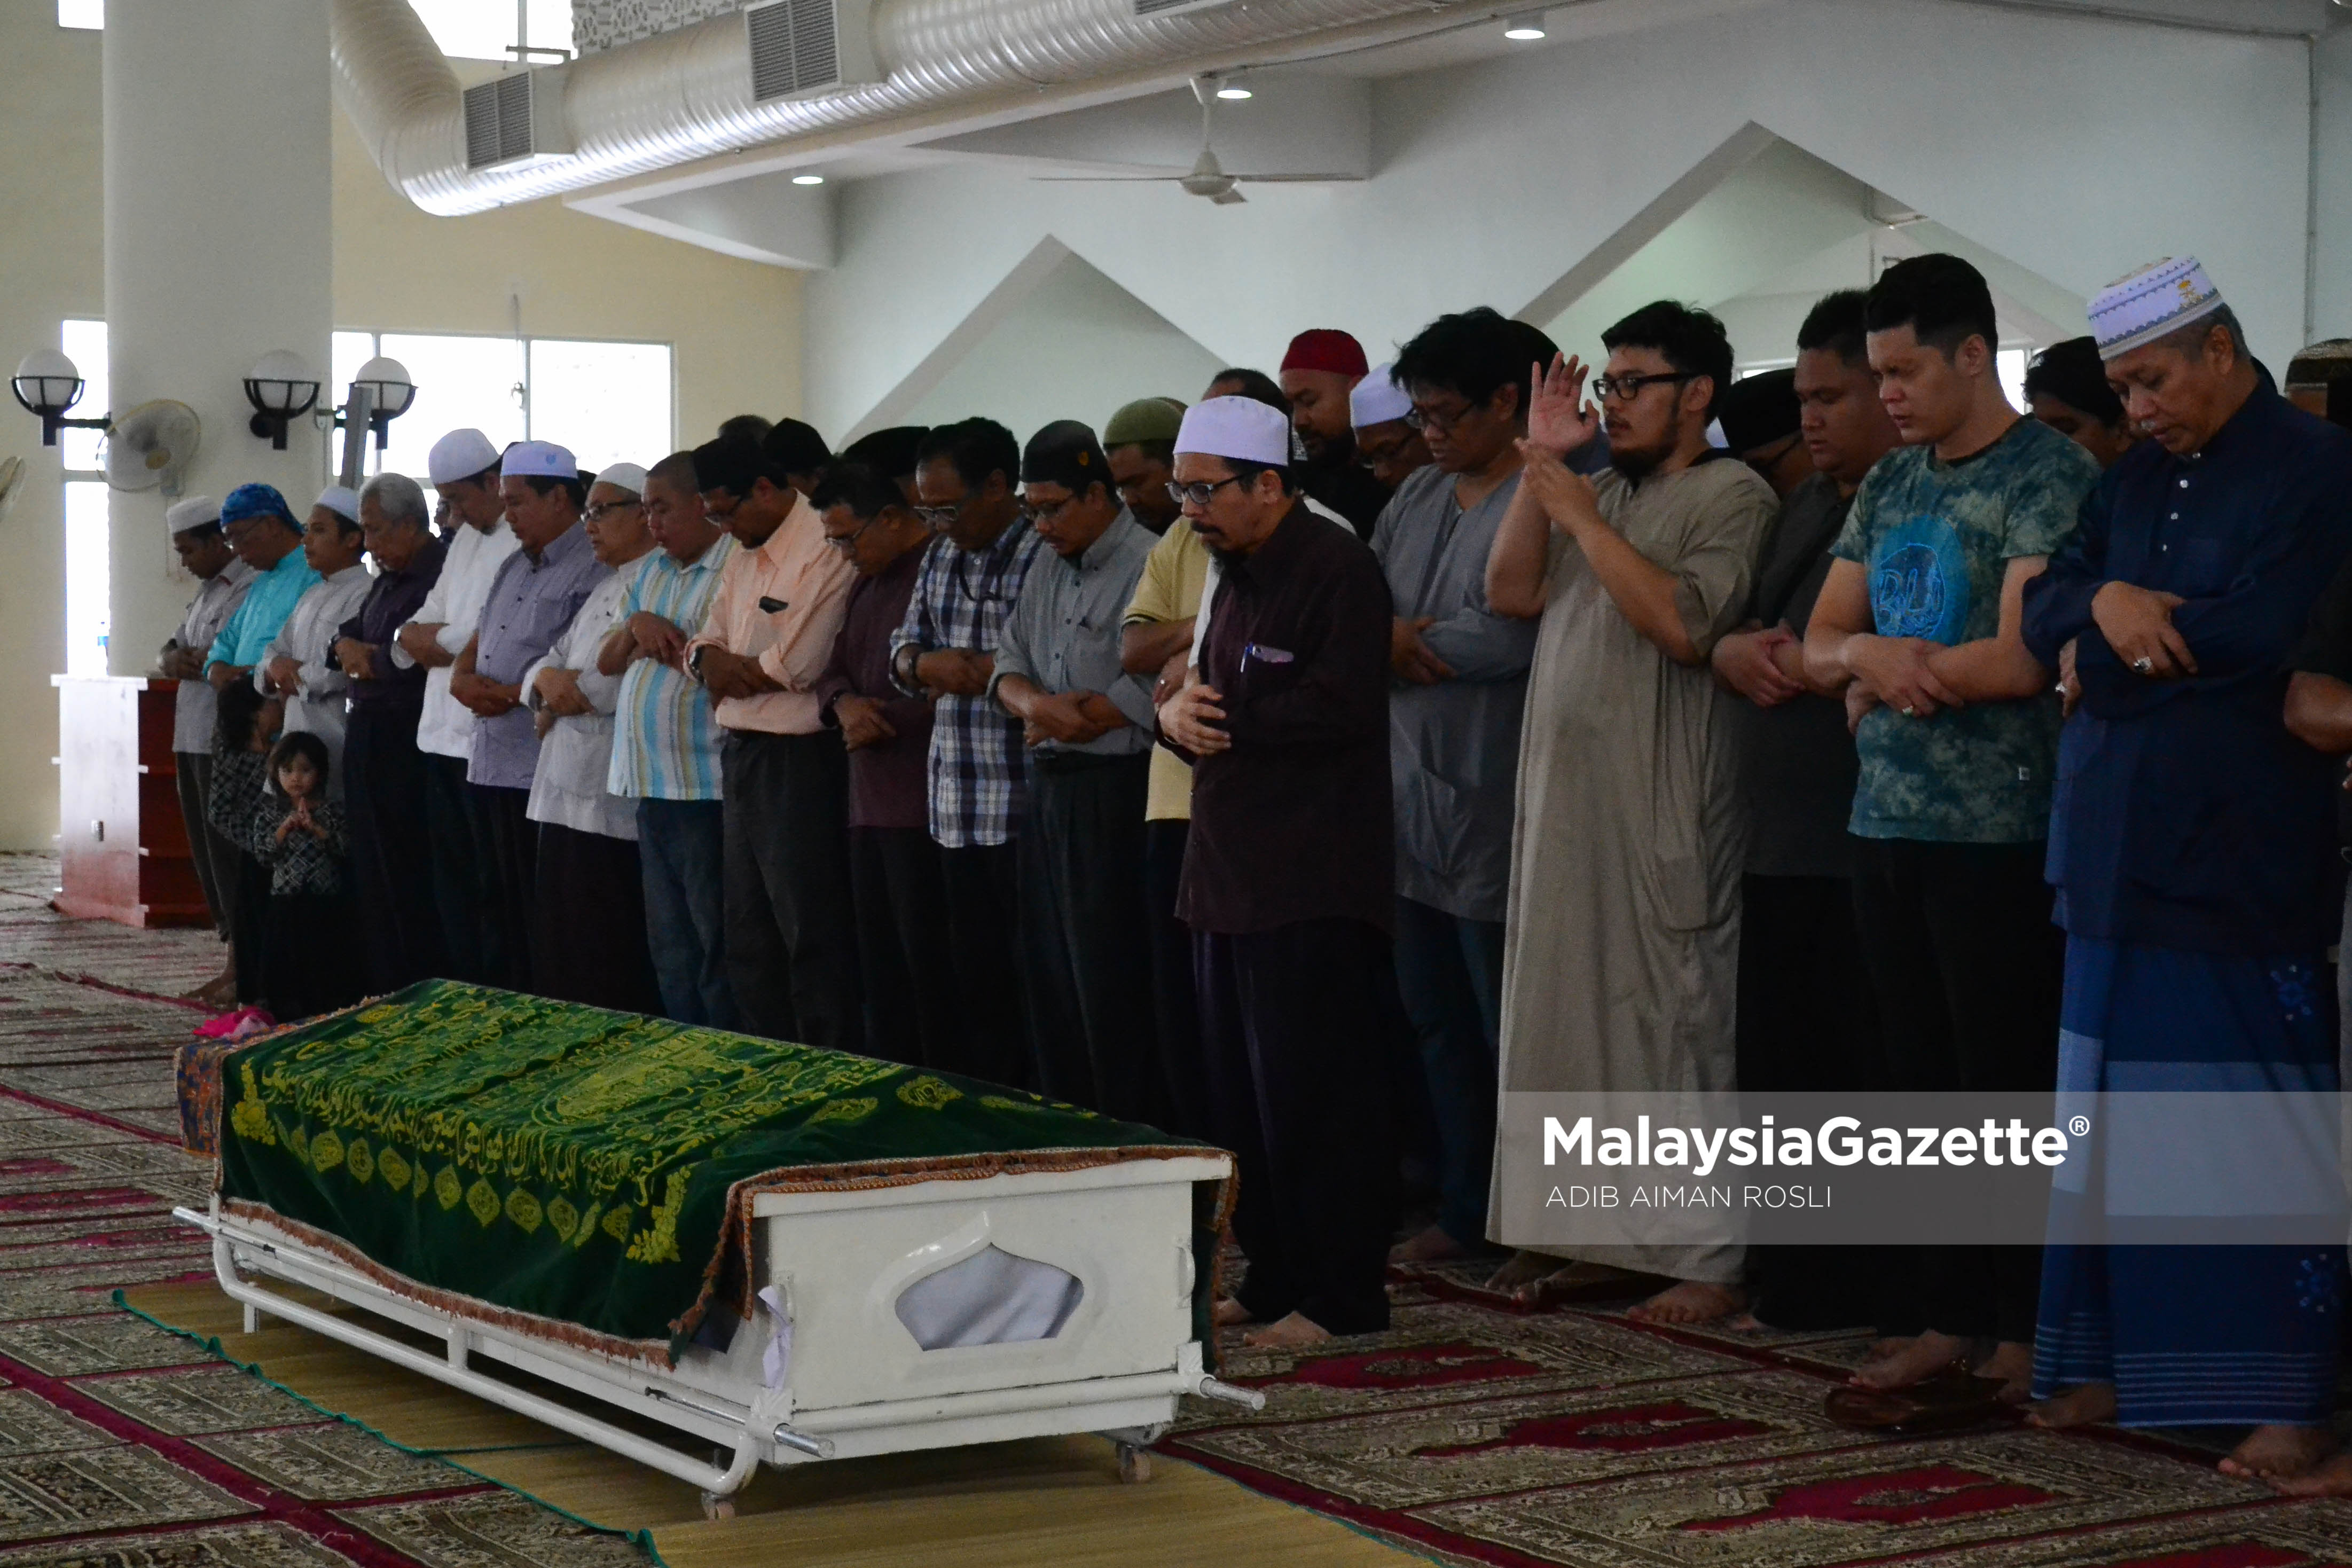 Anak serta rakan-rakan Allahyarham Johan Nawawi bersembahyang solat jenazah bersama sebelum dikebumikan di Masjid Kampung Tunku, Petaling Jaya, Selangor. foto ADIB AIMAN ROSLI, 24 MAC 2017